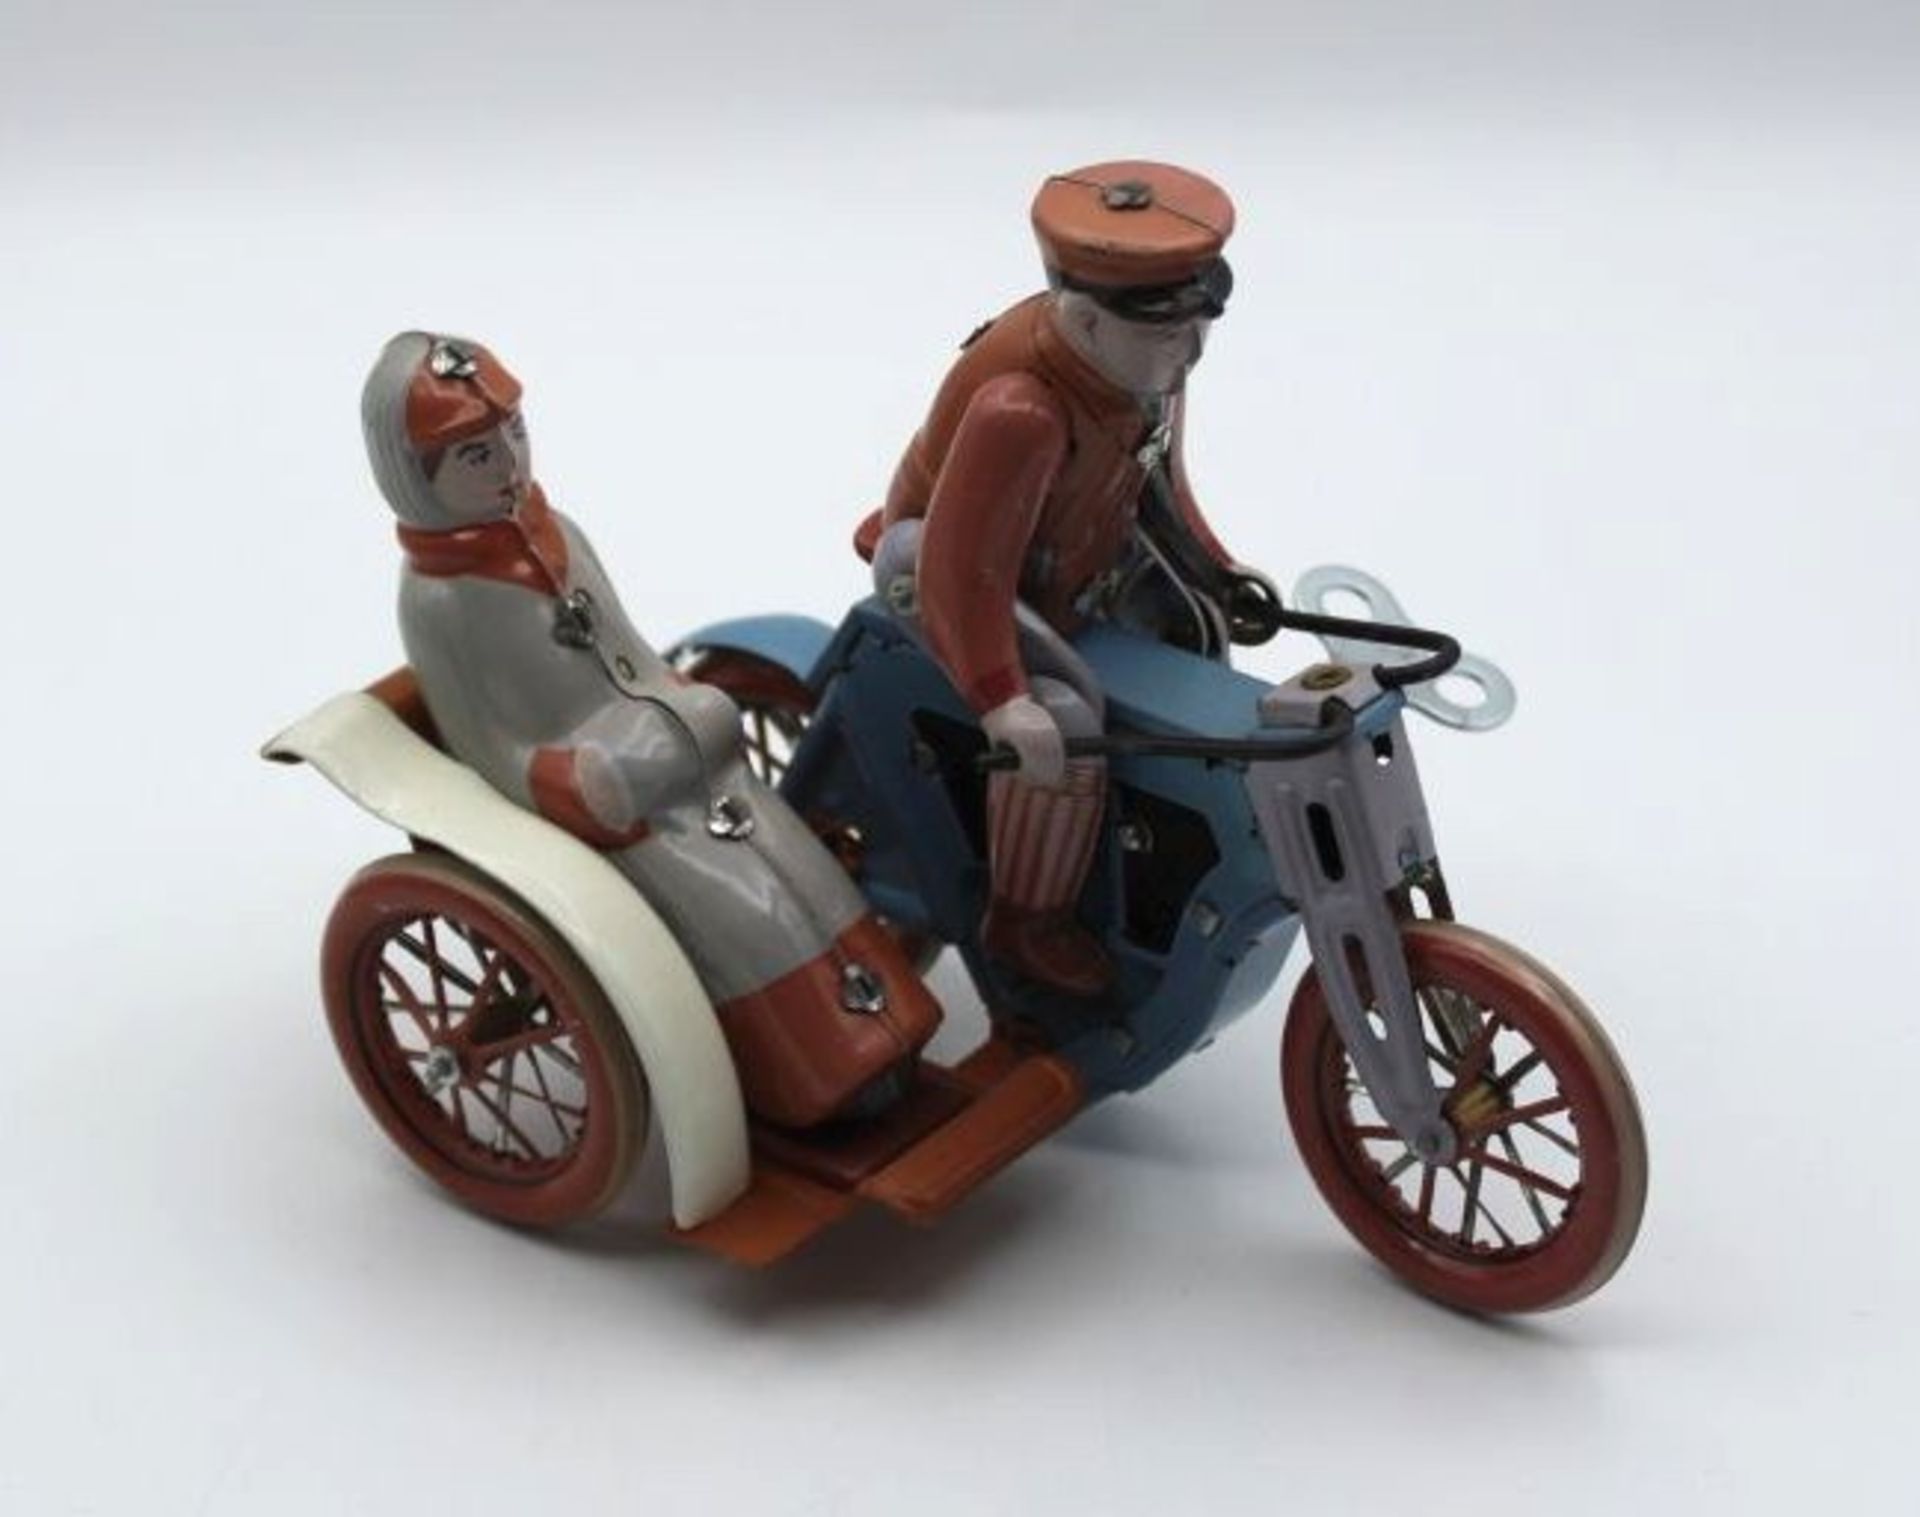 Blech-Motorrad mit Beiwagen, China, MS 458, H-11cm.- - -22.61 % buyer's premium on the hammer